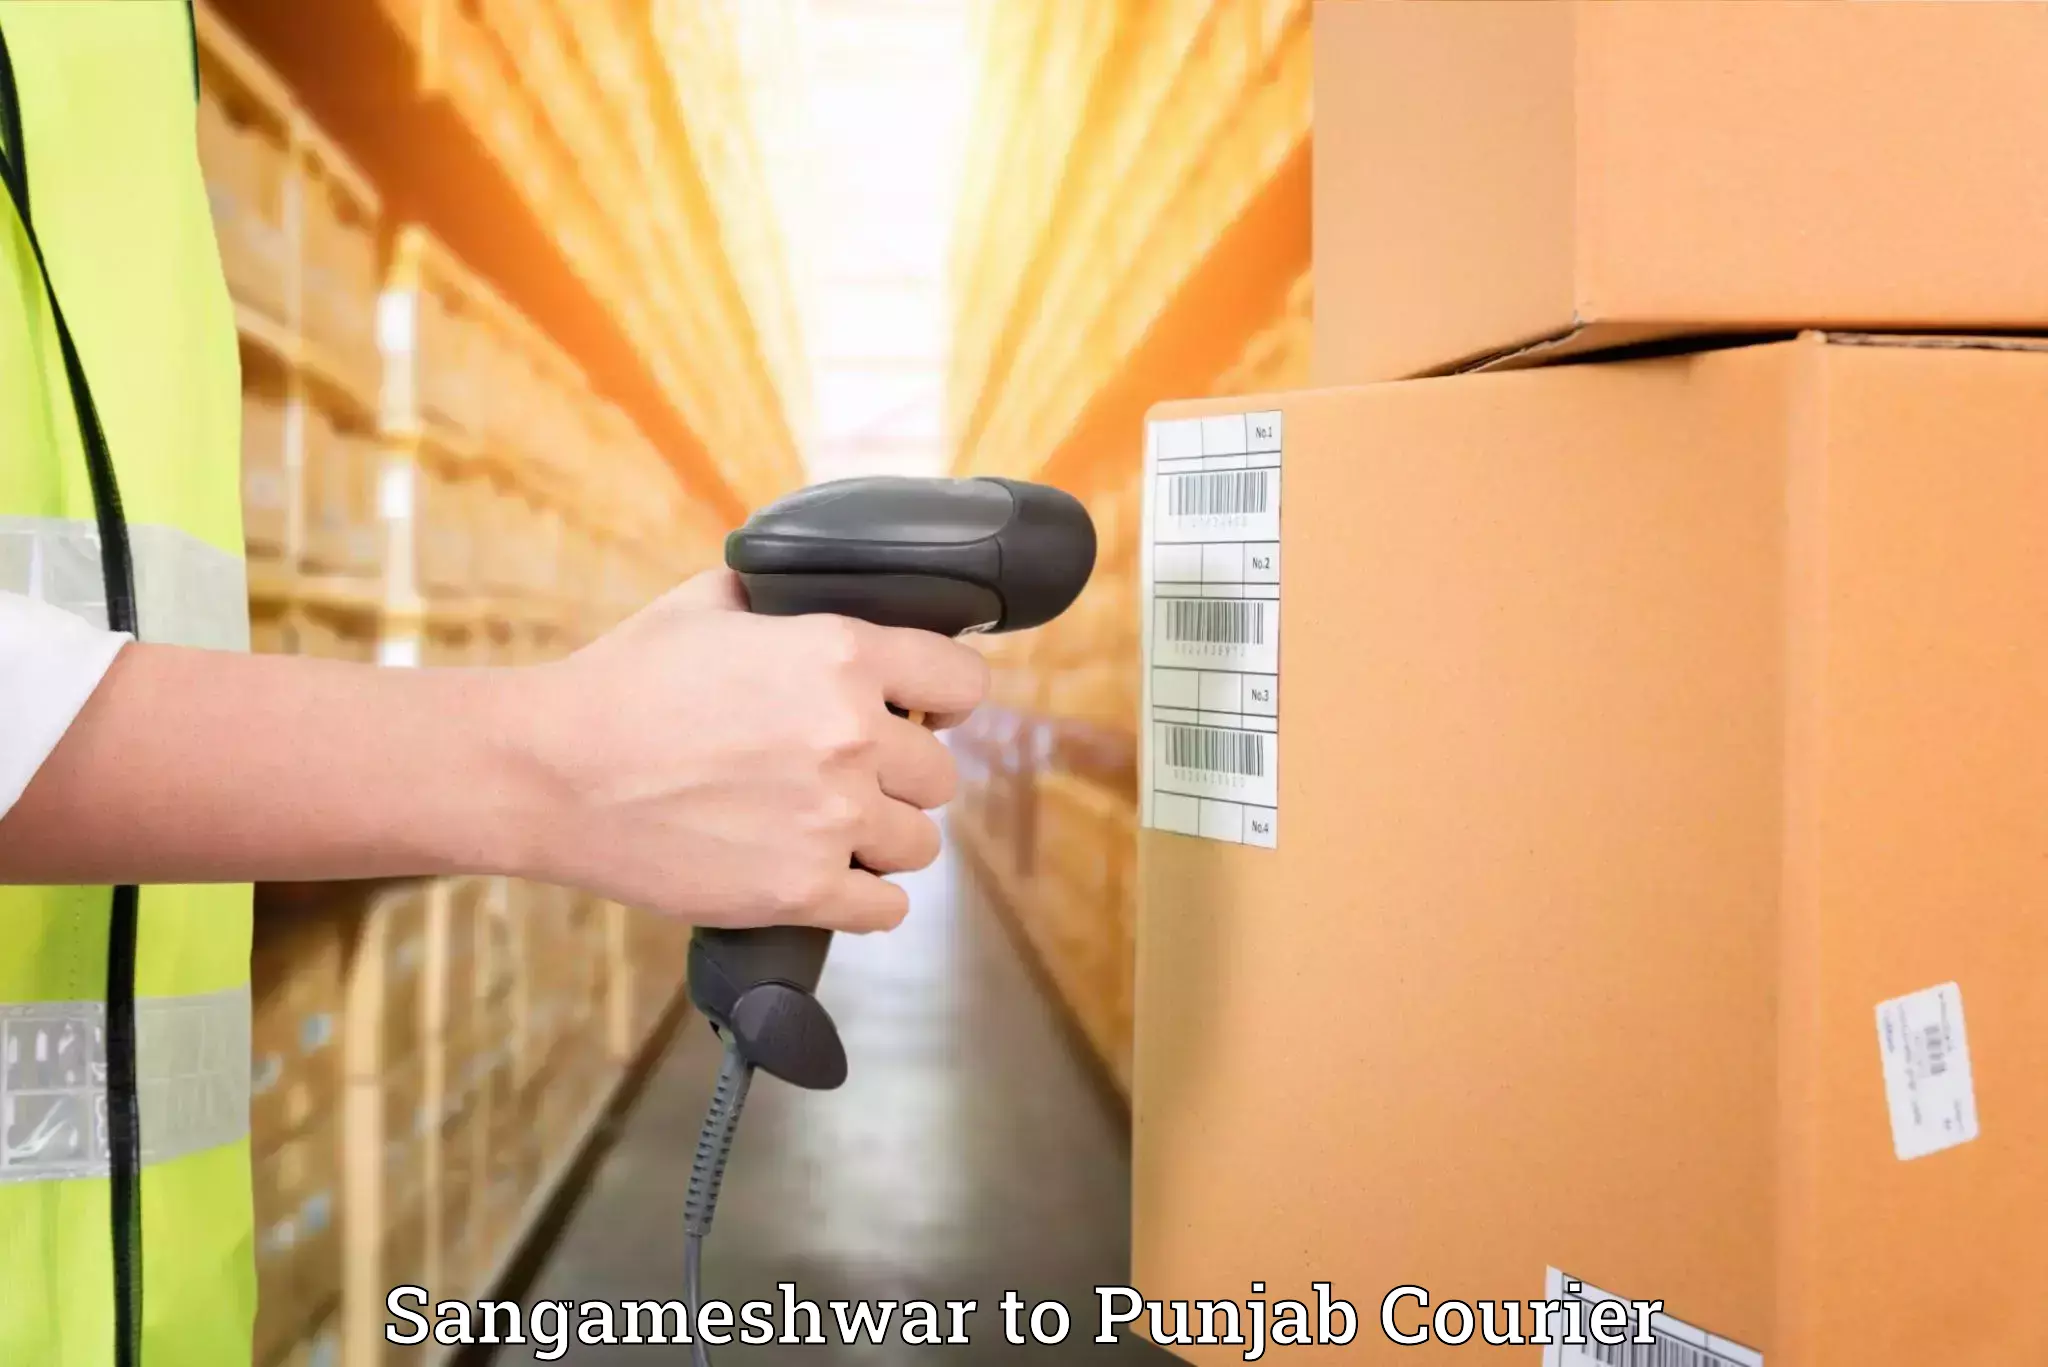 Door-to-door relocation services Sangameshwar to Punjab